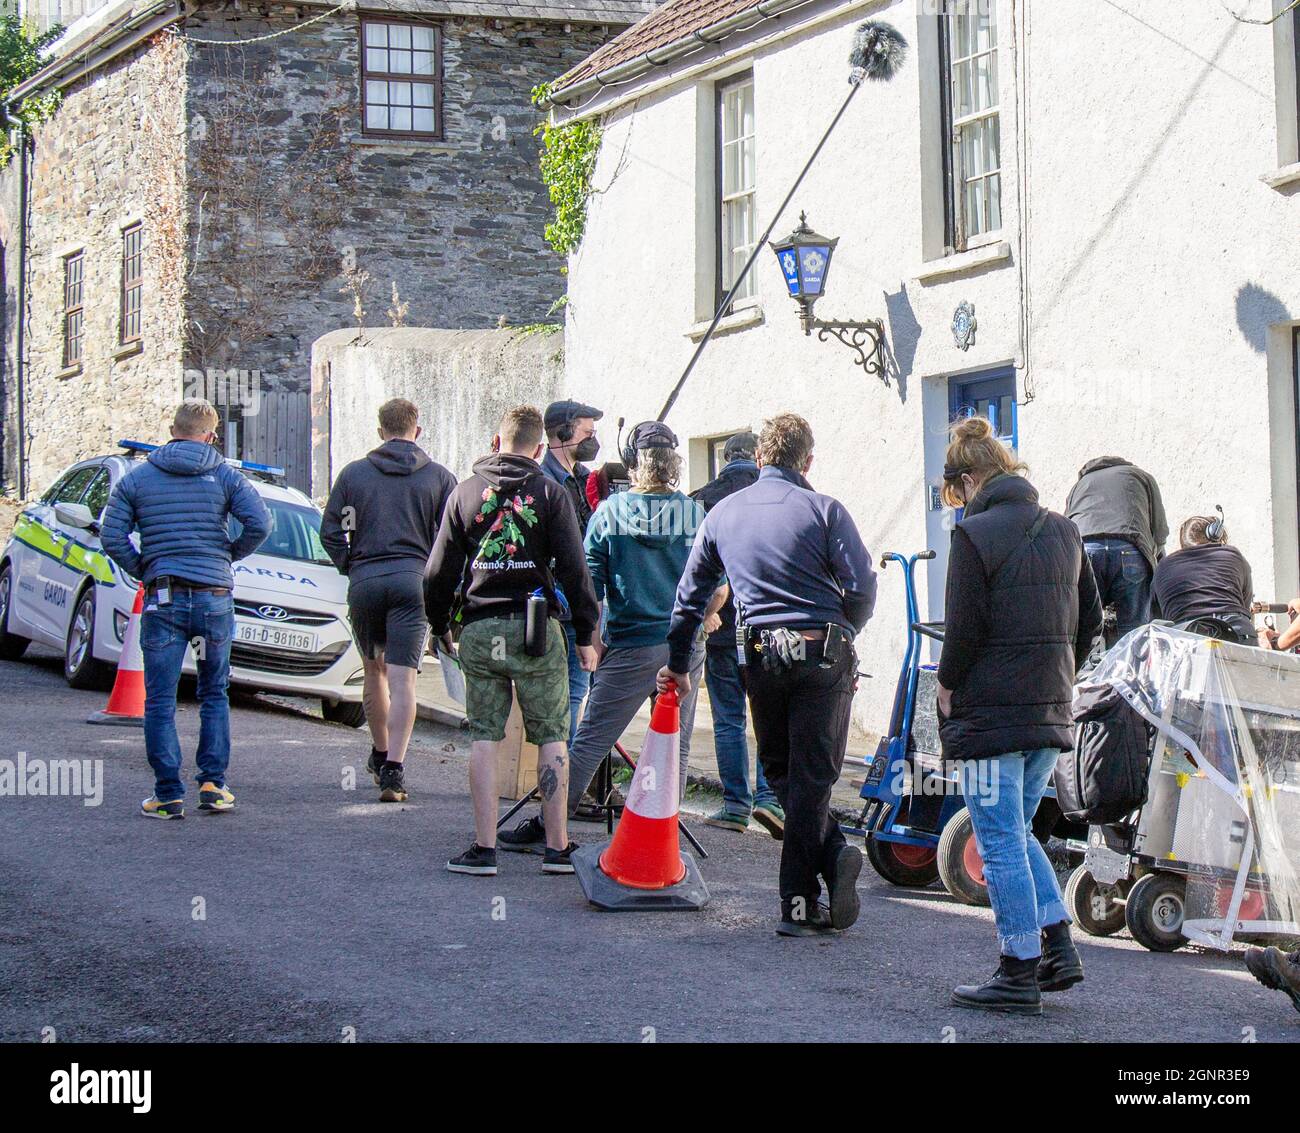 Das Filmteam, das eine Szene auf der Irish Street vor dem Bahnhof Garda filmt, wird nachgestellt. Stockfoto